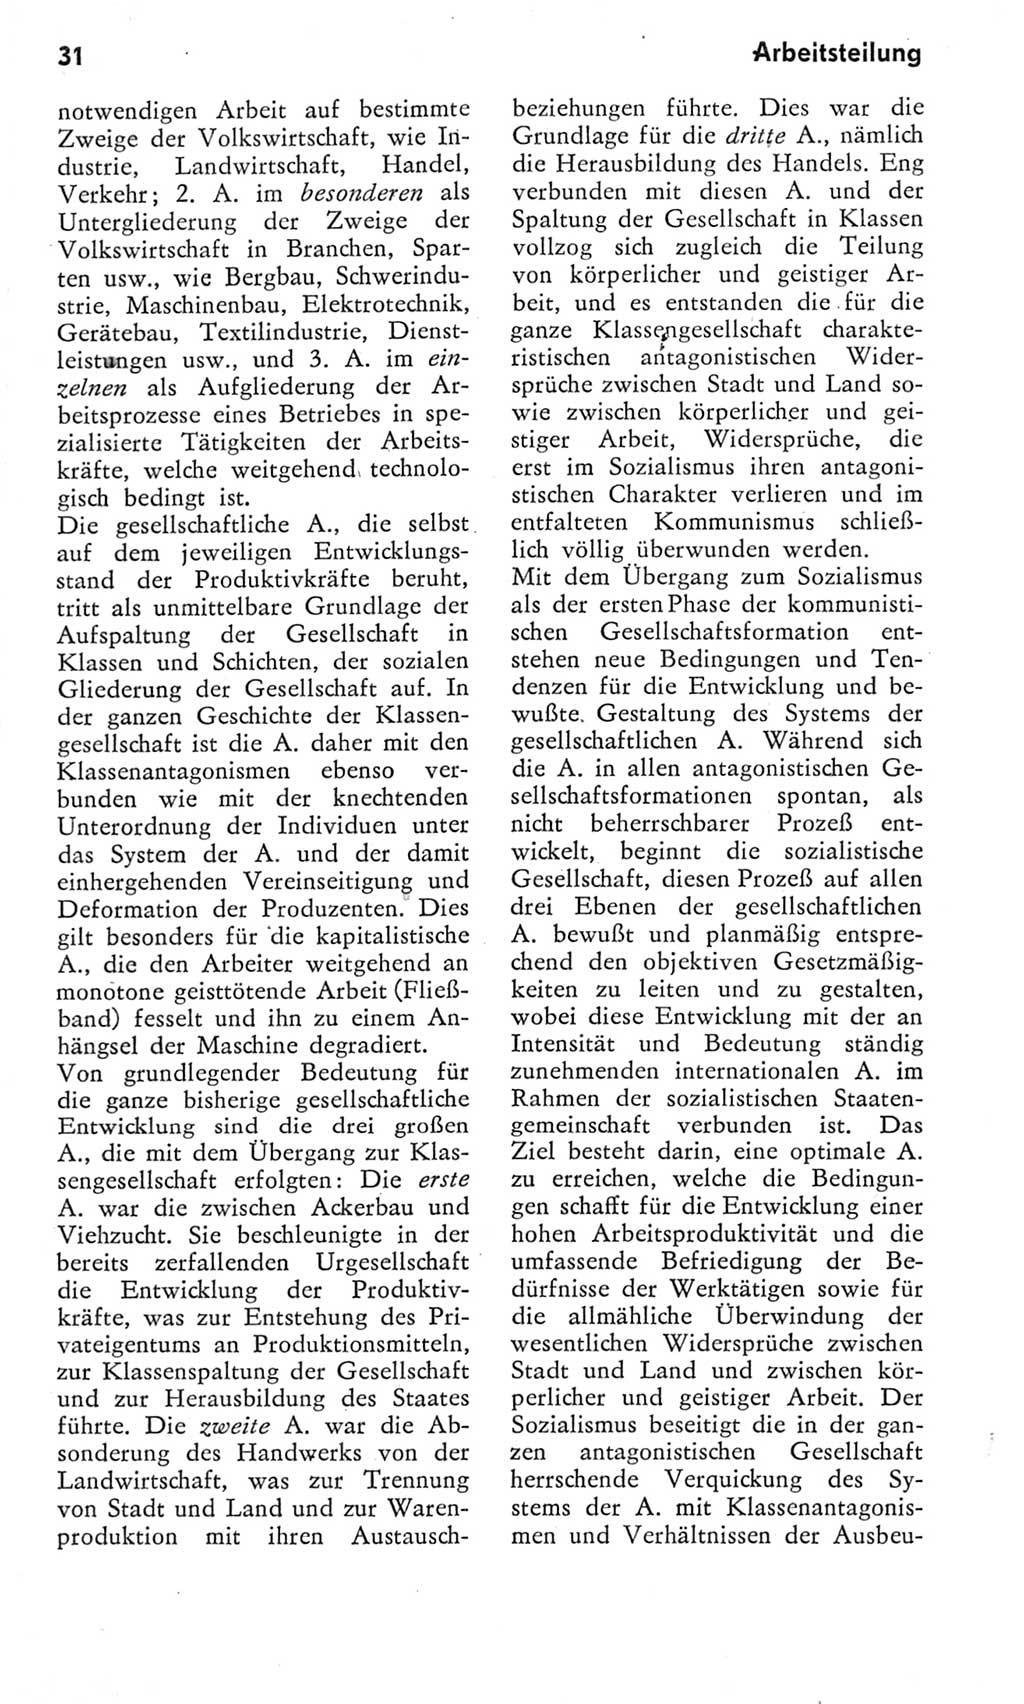 Kleines Wörterbuch der marxistisch-leninistischen Philosophie [Deutsche Demokratische Republik (DDR)] 1975, Seite 31 (Kl. Wb. ML Phil. DDR 1975, S. 31)